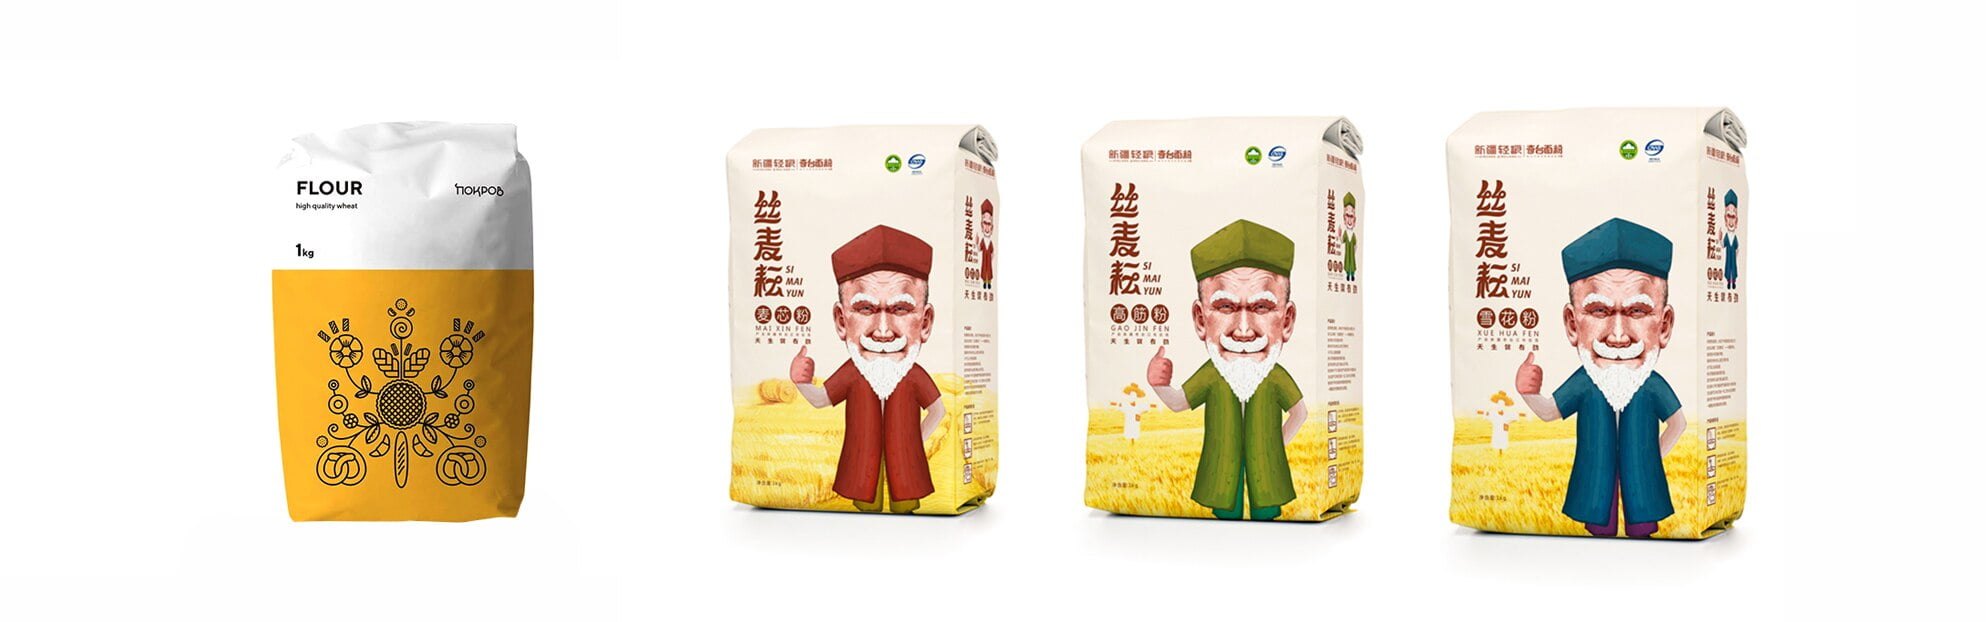 flour-and-grain-custom-design-bespoke-packaging.jpg